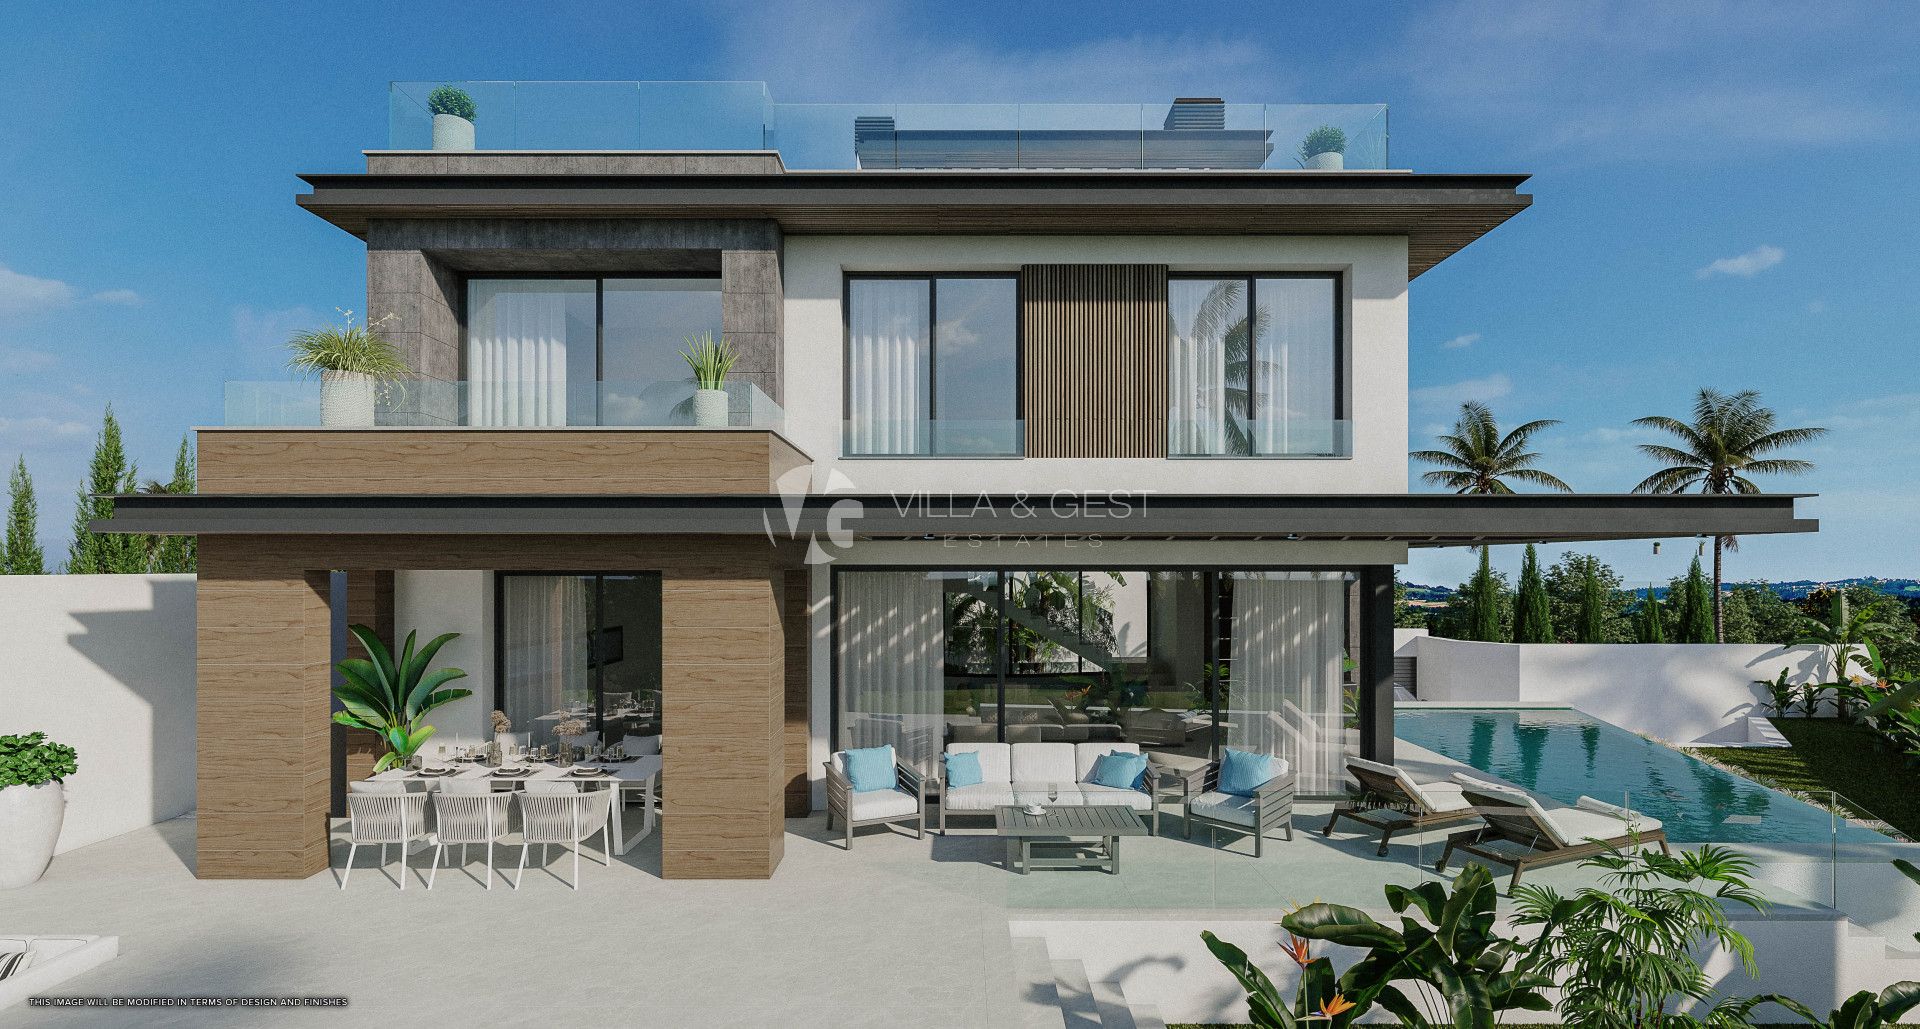 Bali Villas, New Development in Mijas Costa